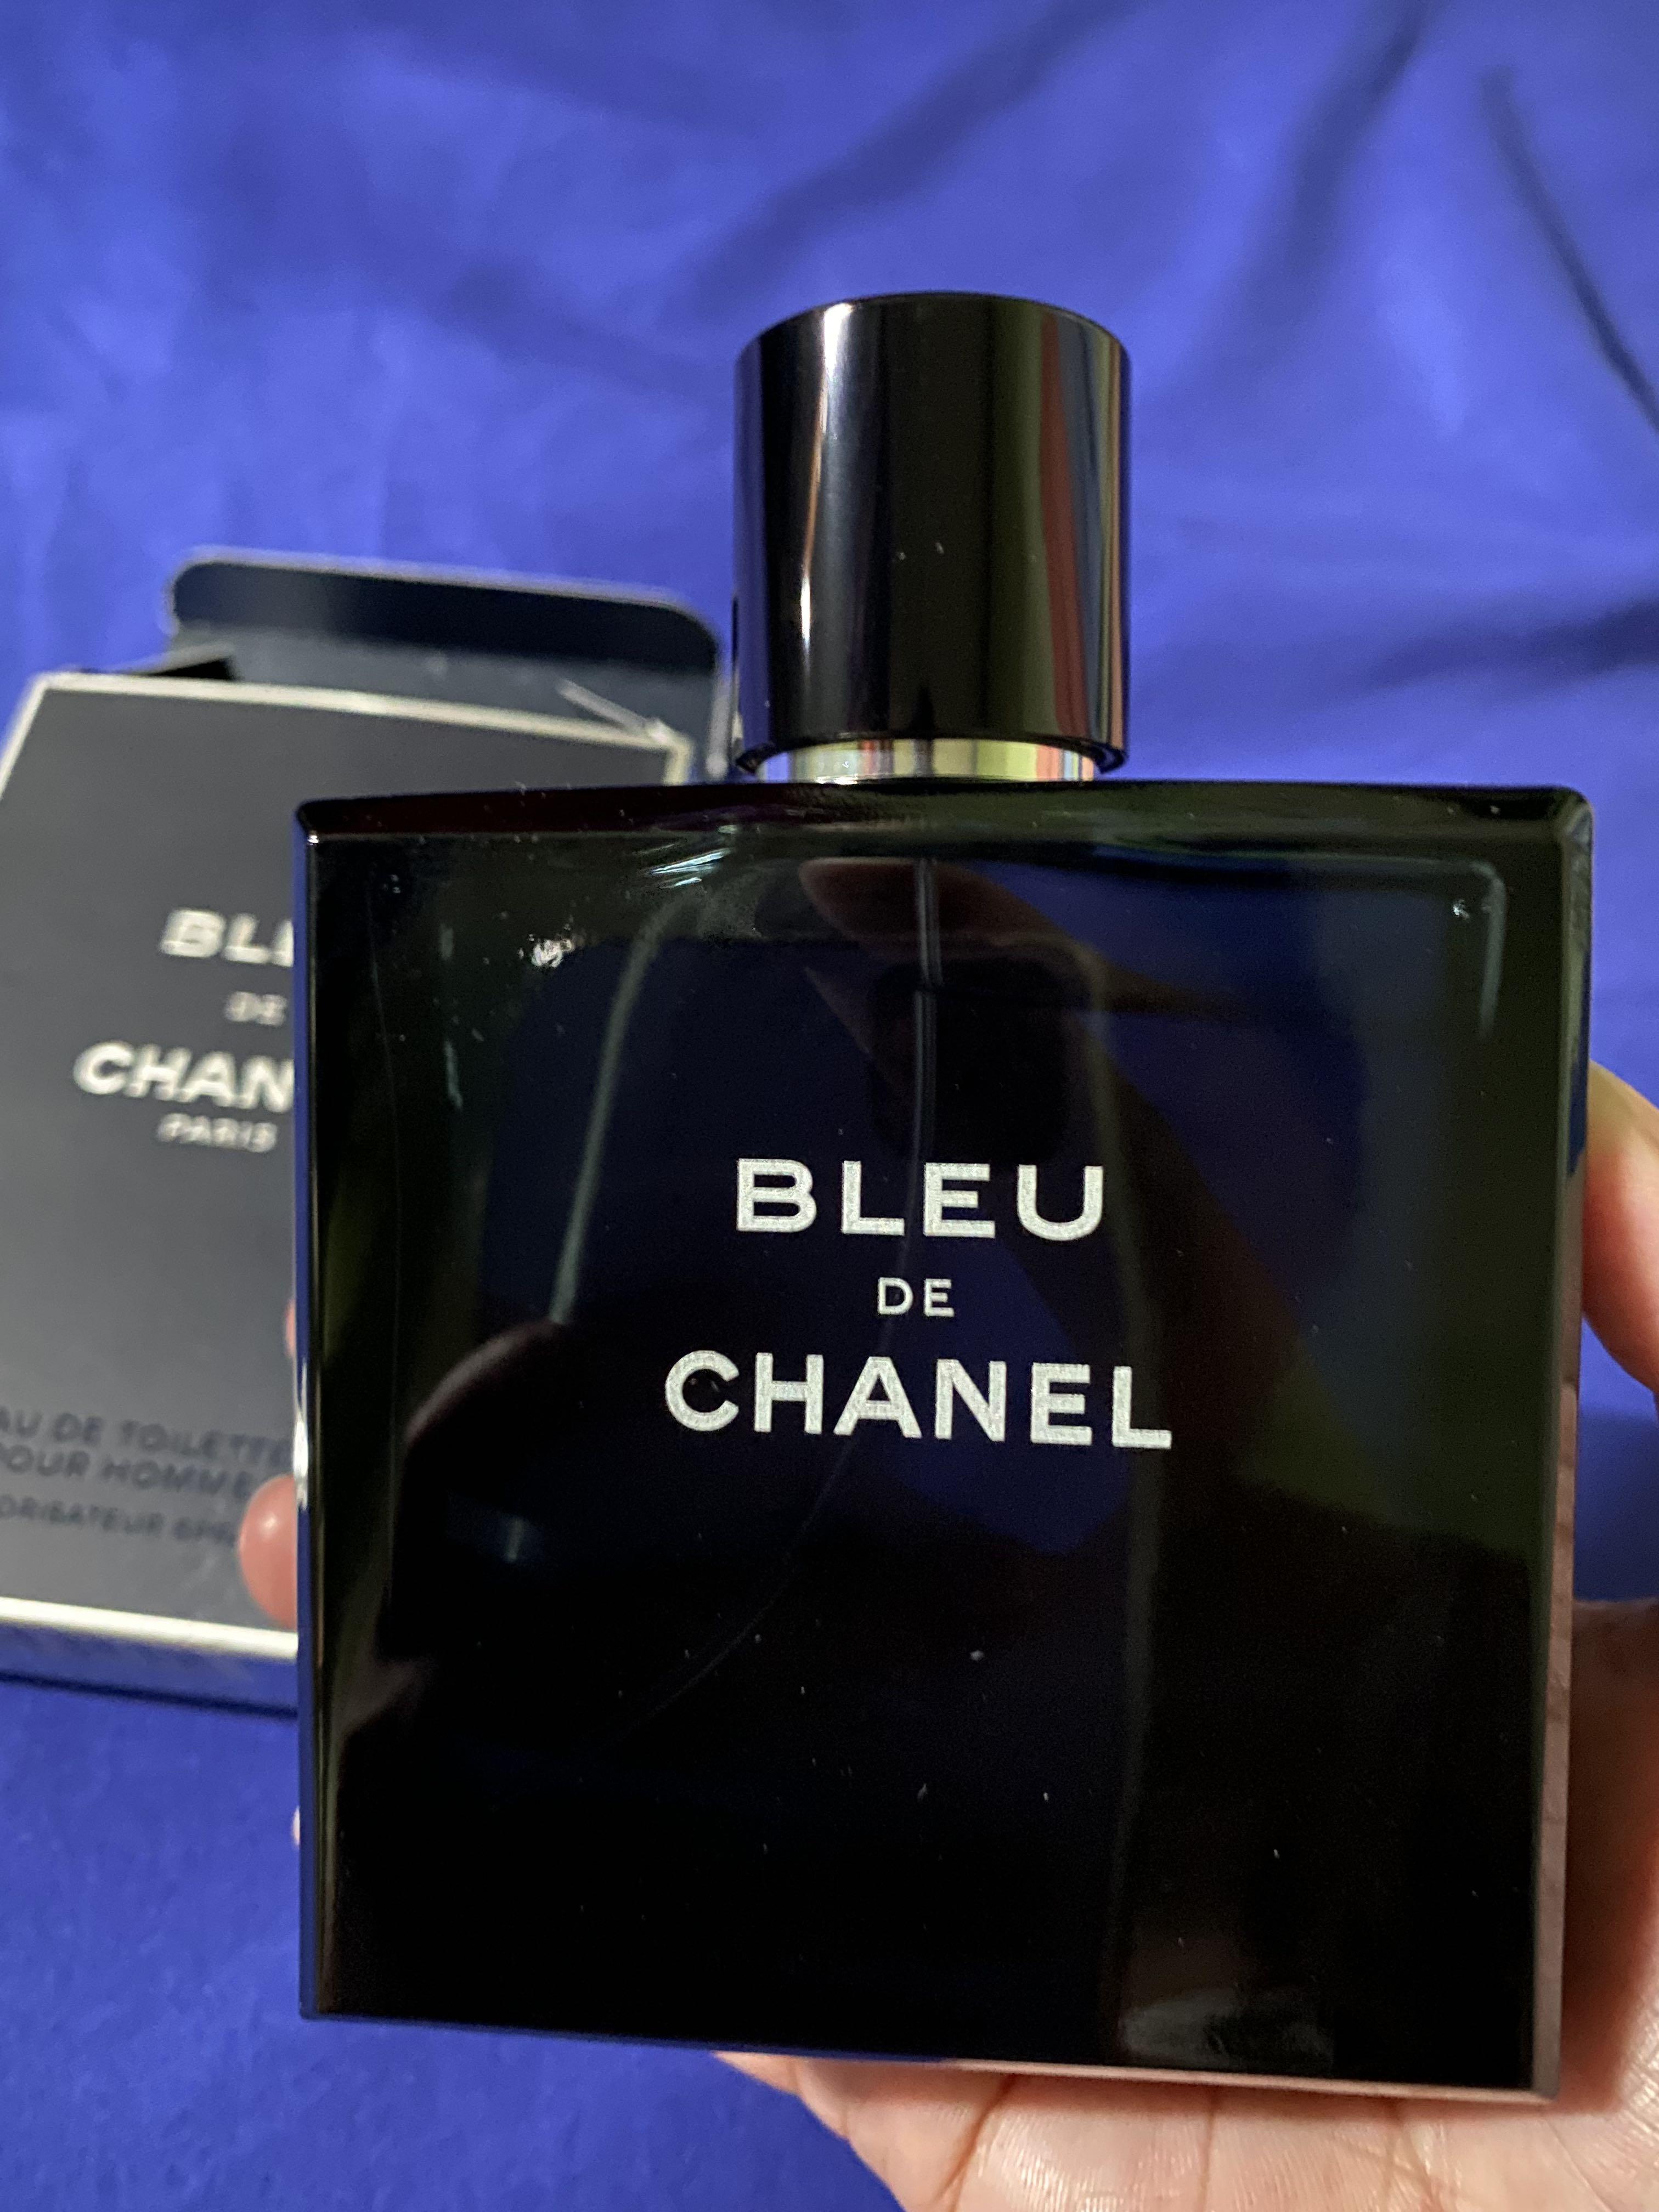 BLEU DE CHANEL EAU DE TOILETTE POUR HOMME FOR MEN 100 ML, Beauty & Personal  Care, Fragrance & Deodorants on Carousell